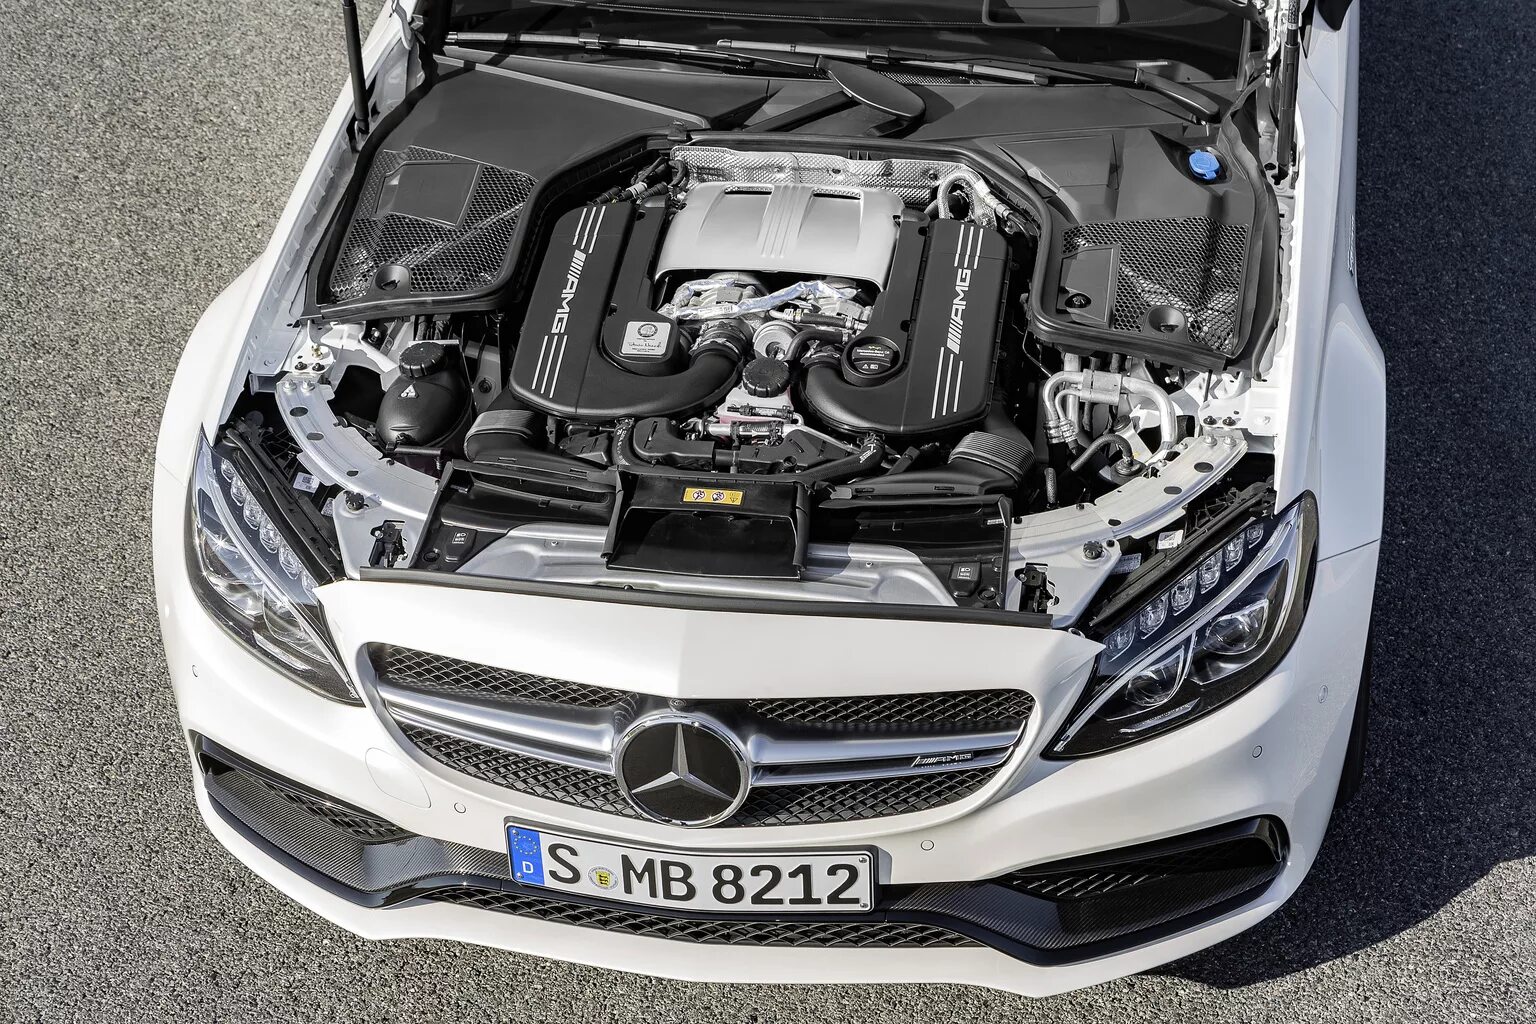 Mercedes e двигатели. C63 AMG мотор. АМГ 63 Мерседес мотор. Mercedes c63 AMG двигатель. 2017 Mercedes-Benz c63 AMG.